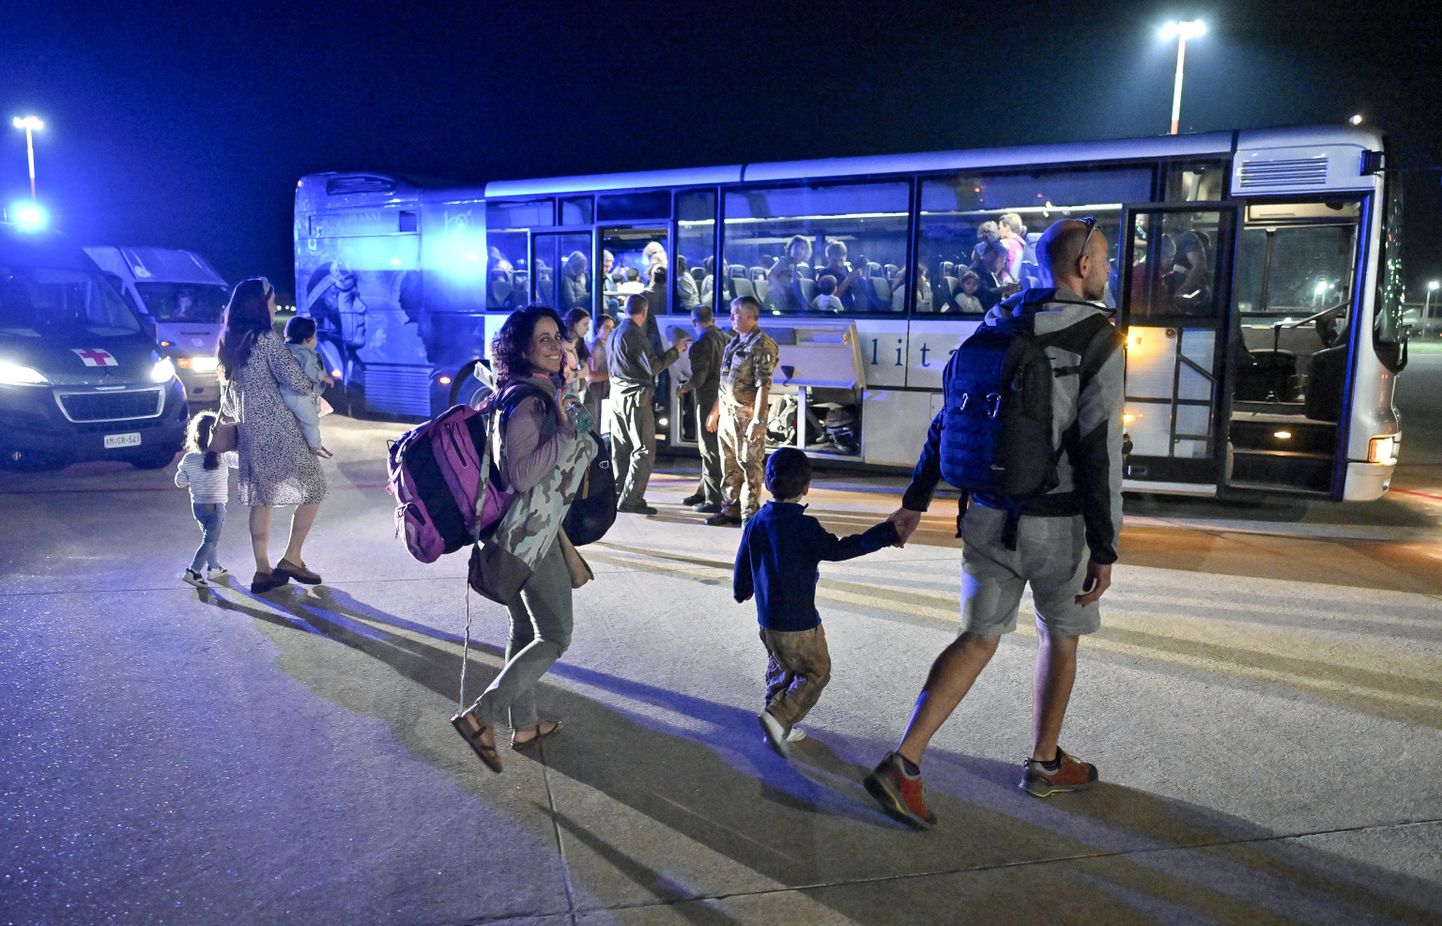 Paljud riigid evaukeerivad oma kodanikud Iisraelist, mida ründab Palestiina terroriorganisatsioon hamas, mis sisenes 7. oktoobril 2023 Iisraeli territooriumile, tappes palju iisraellasi. Pildil itaallalased Tel Avivi Ben Gurioni rahvusvahelises lennujaamas